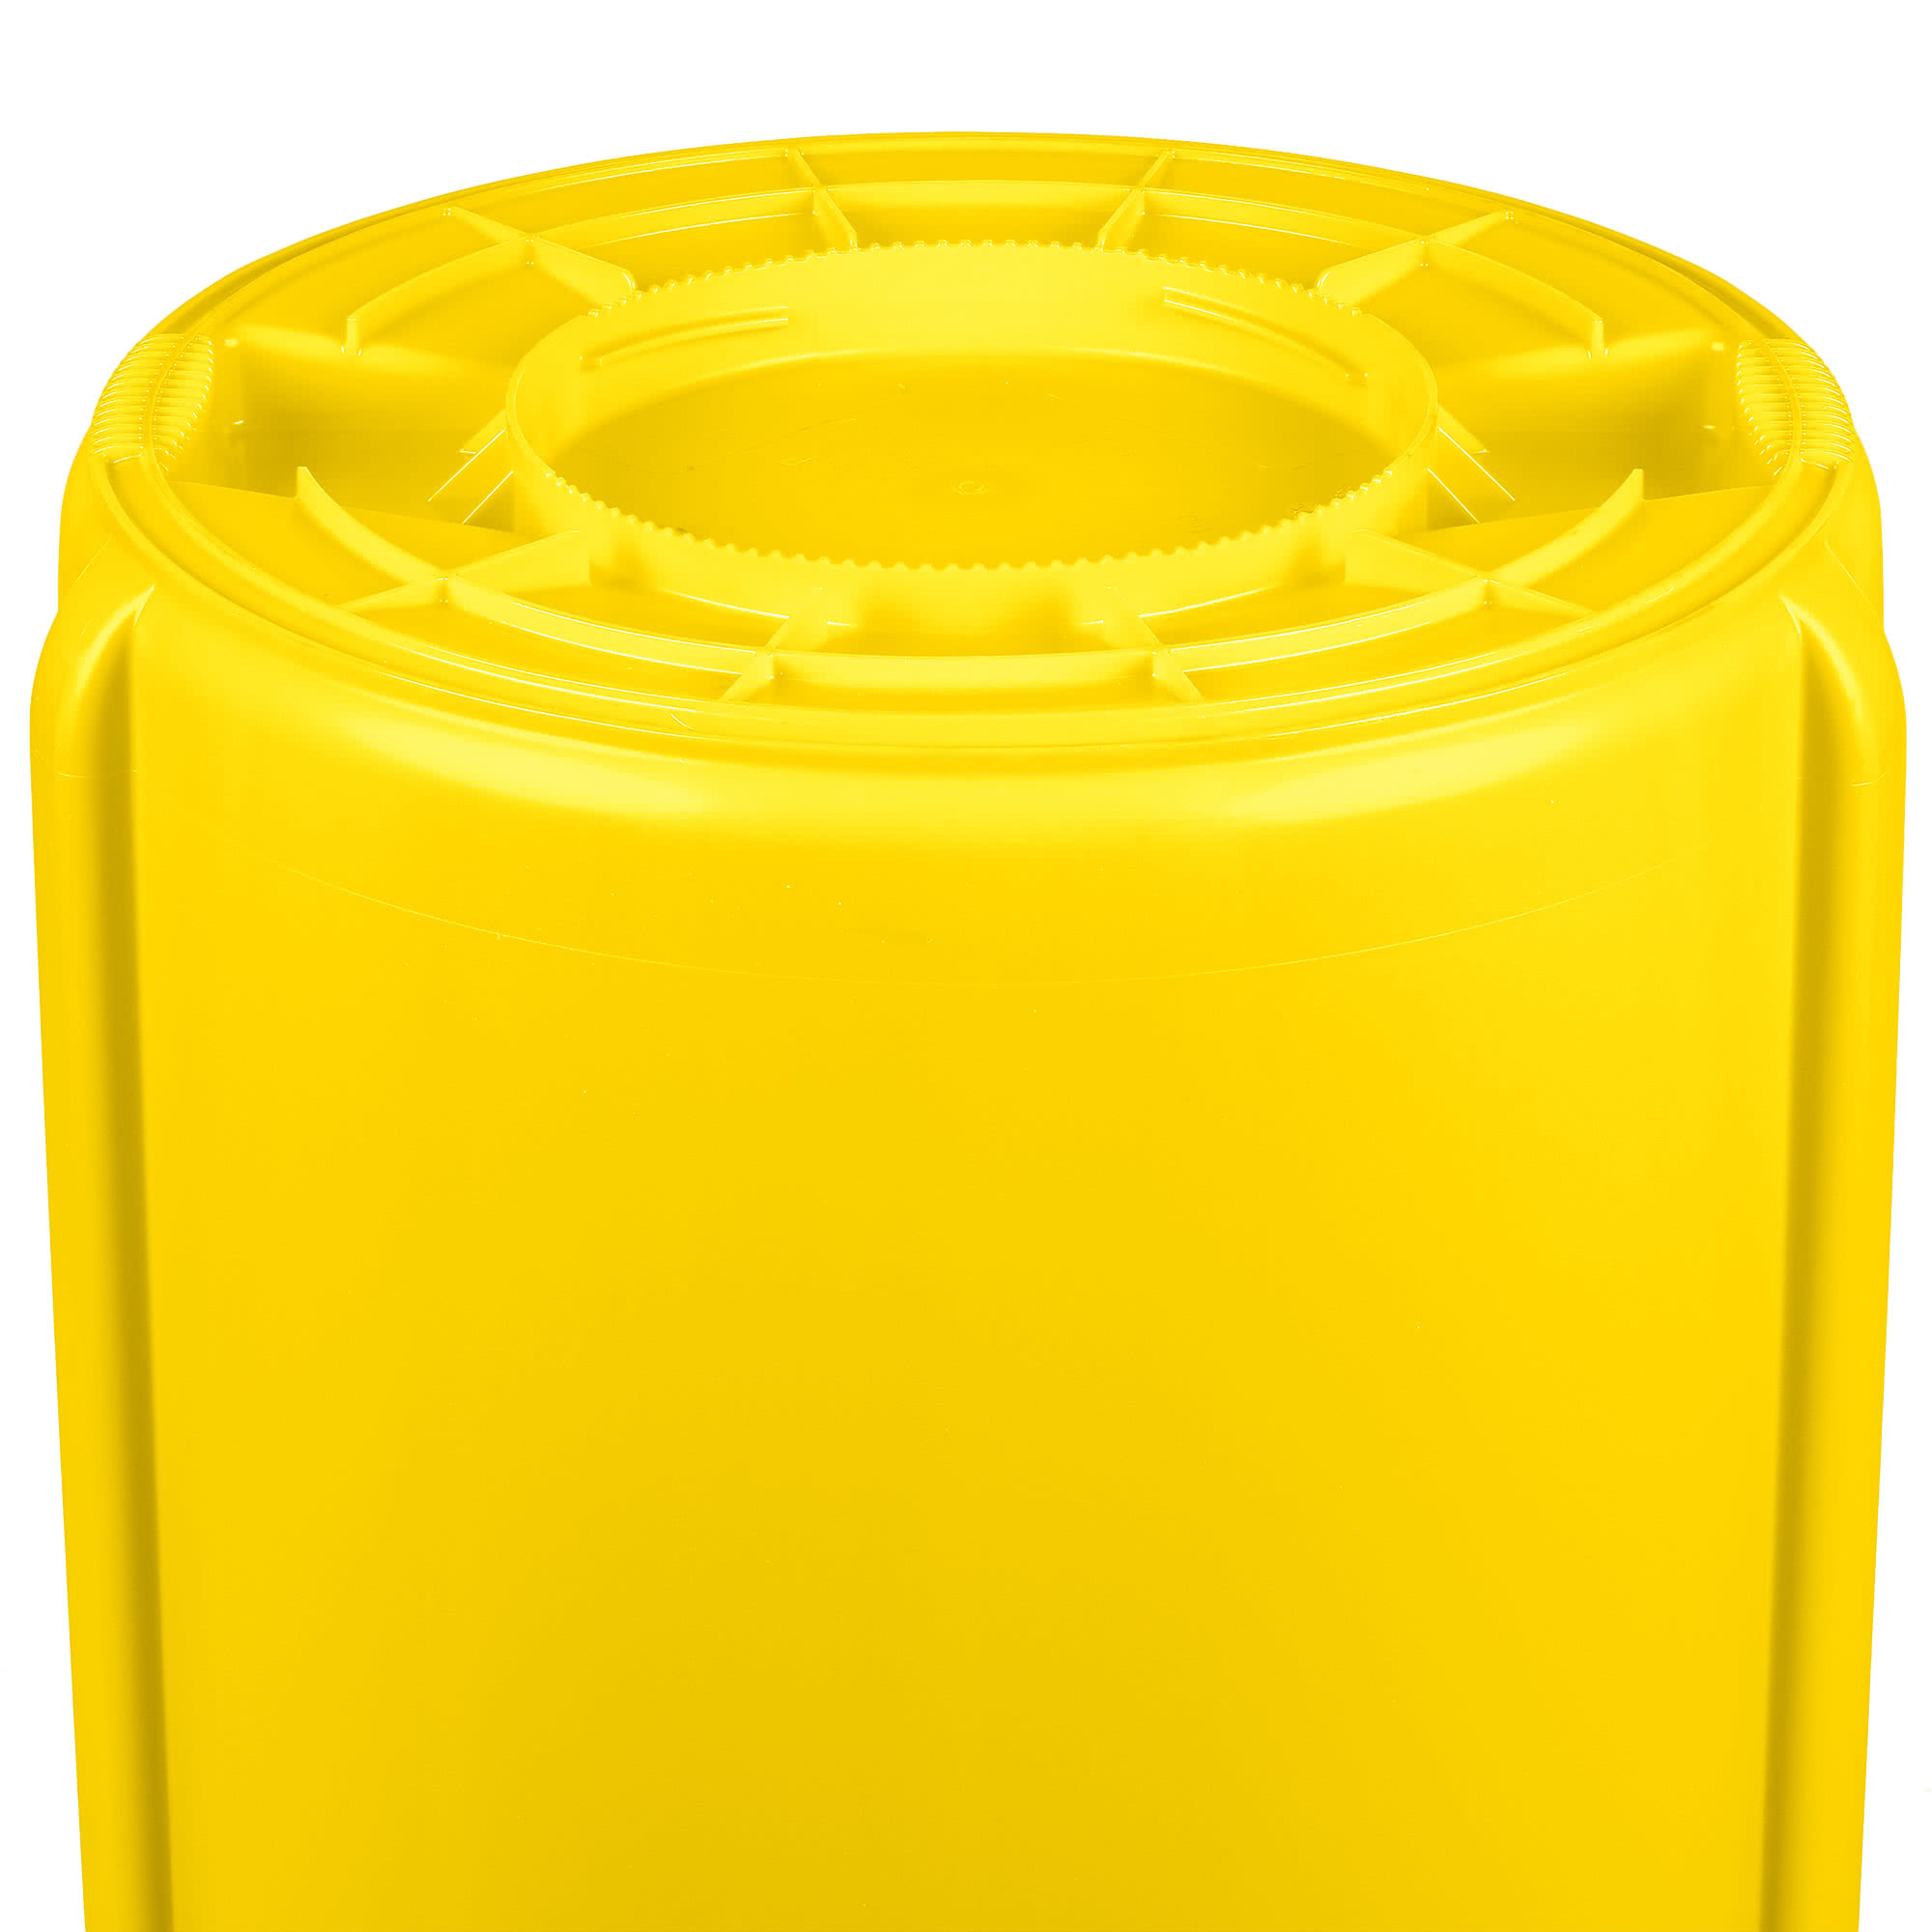 Rubbermaid FG265500YEL contenedor Brute color amarillo con capacidad para 55 galones